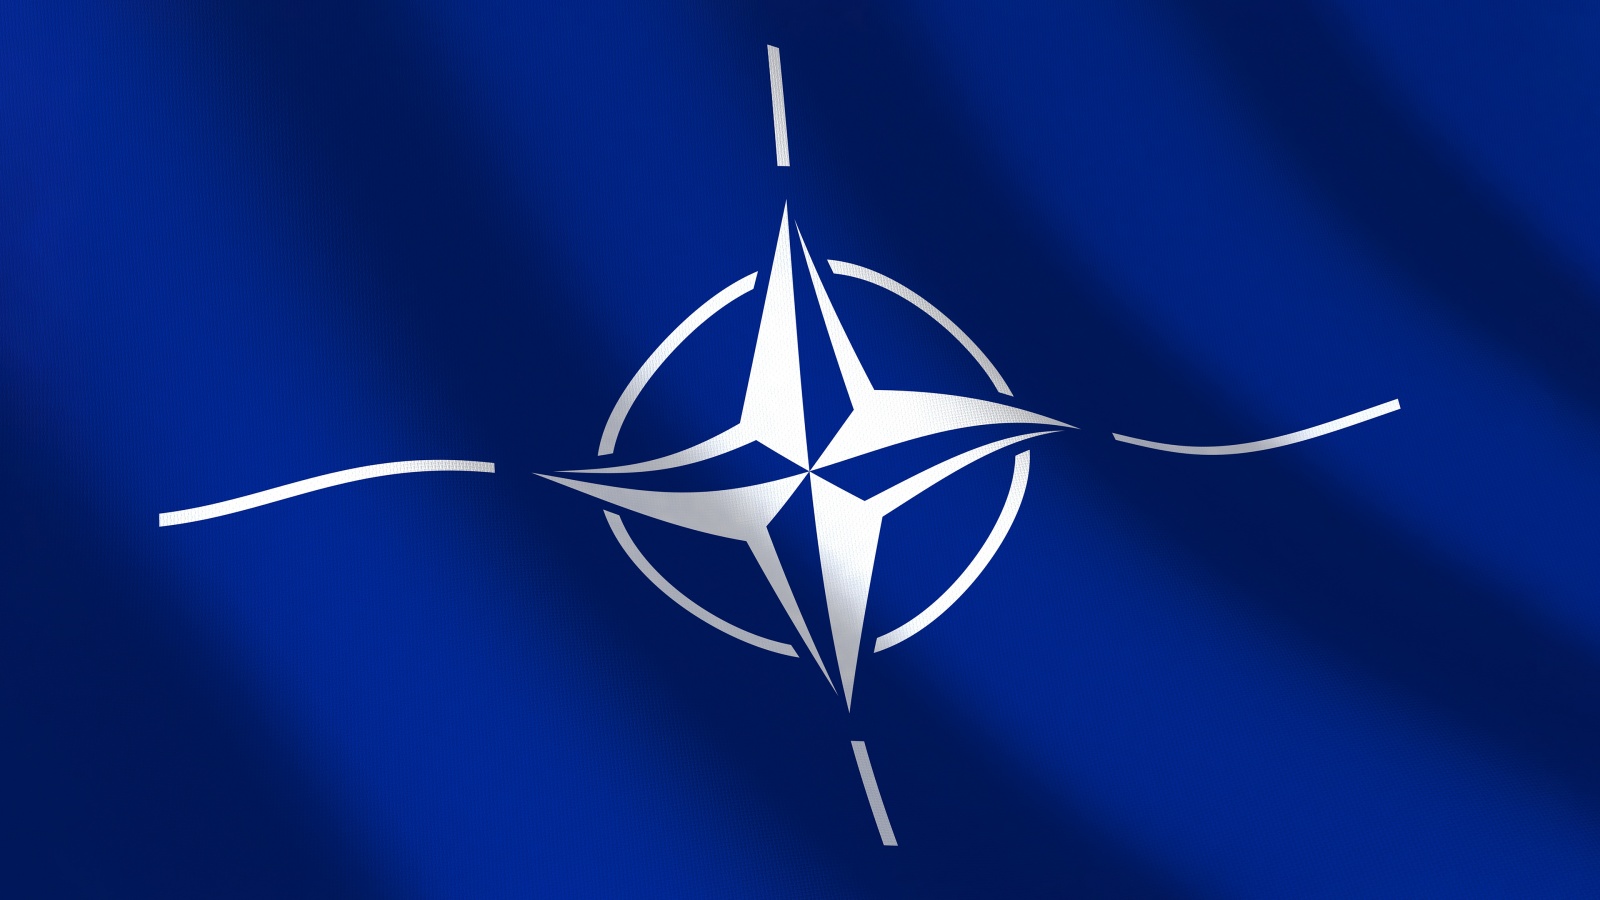 NATO valmistelee uutta liittouman puolustusstrategiaa